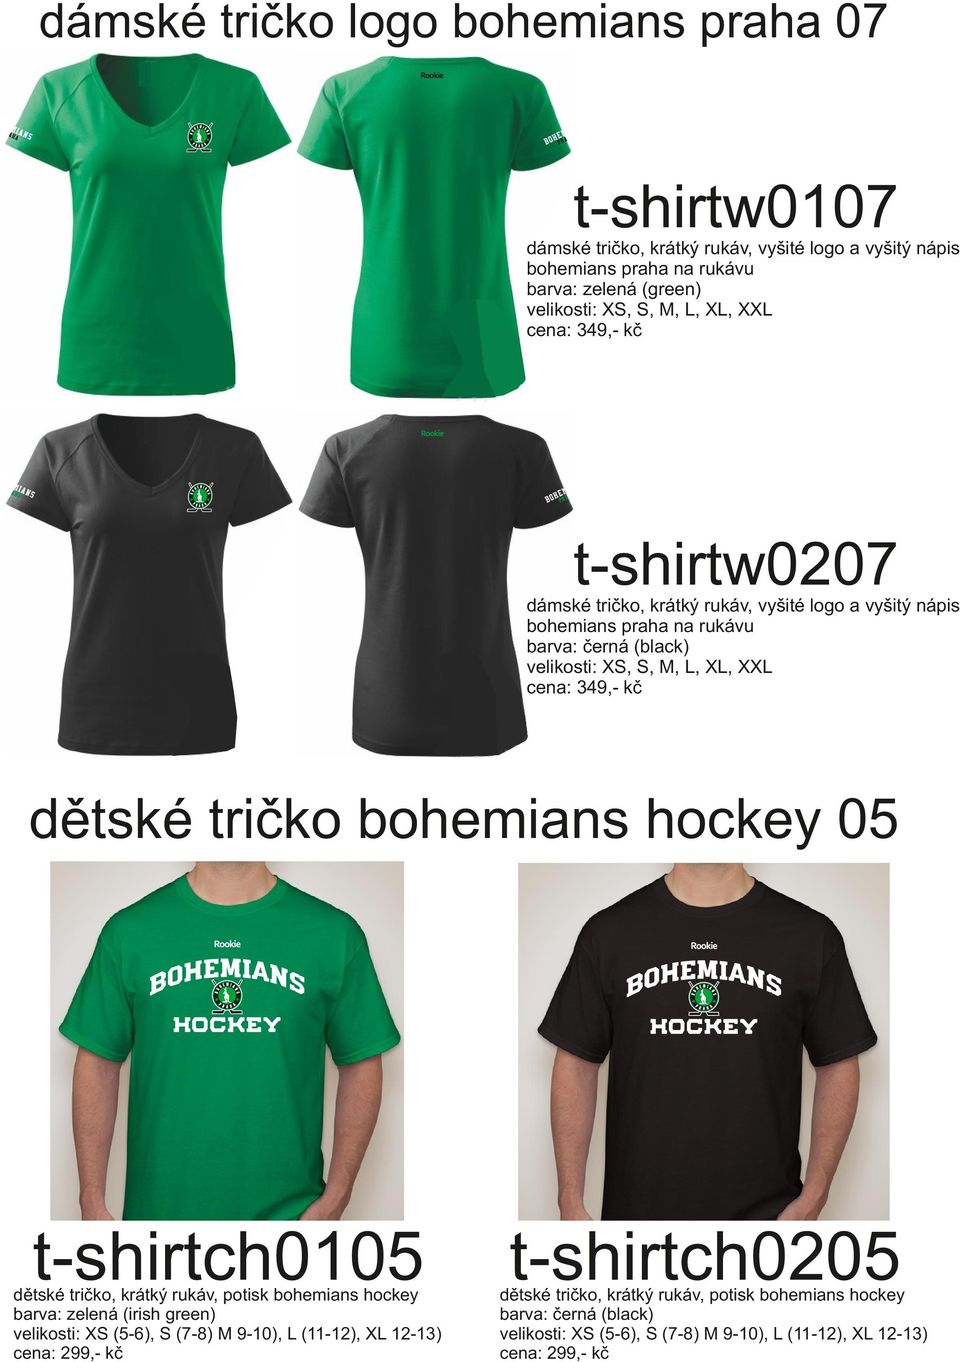 L, XL, XXL cena: 349,- kč dětské tričko bohemians hockey 05 t-shirtch0105 dětské tričko, krátký rukáv, potisk bohemians hockey barva: zelená (irish green)